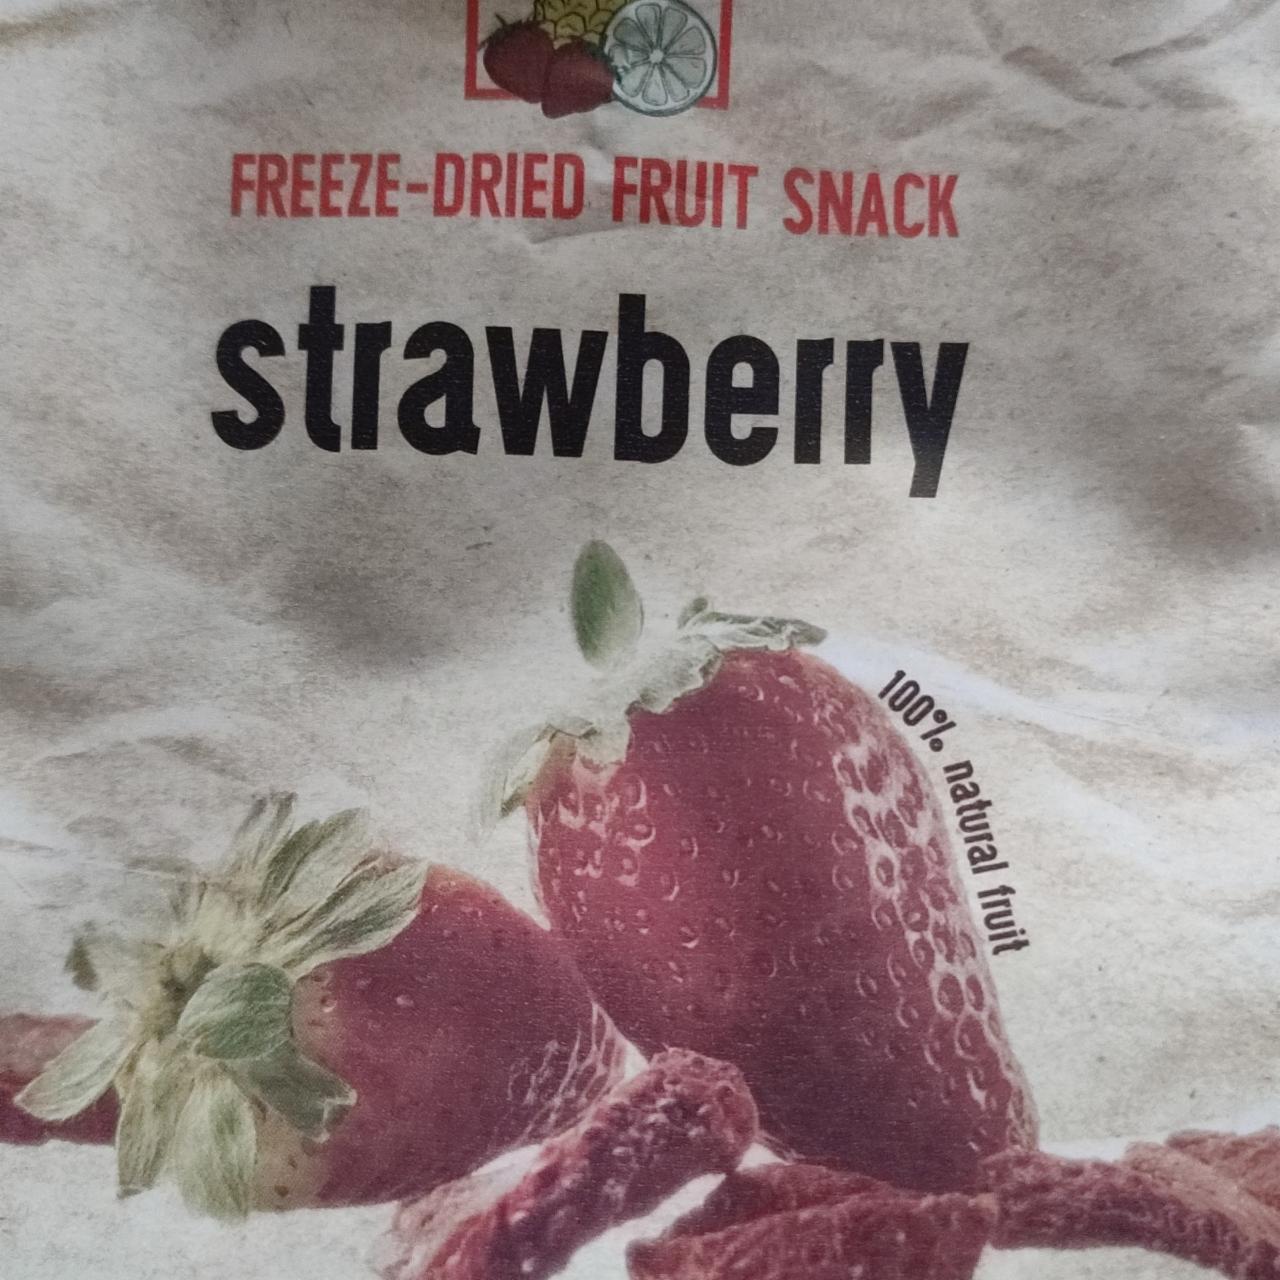 Fotografie - Freeze-dried Fruit snack strawberry